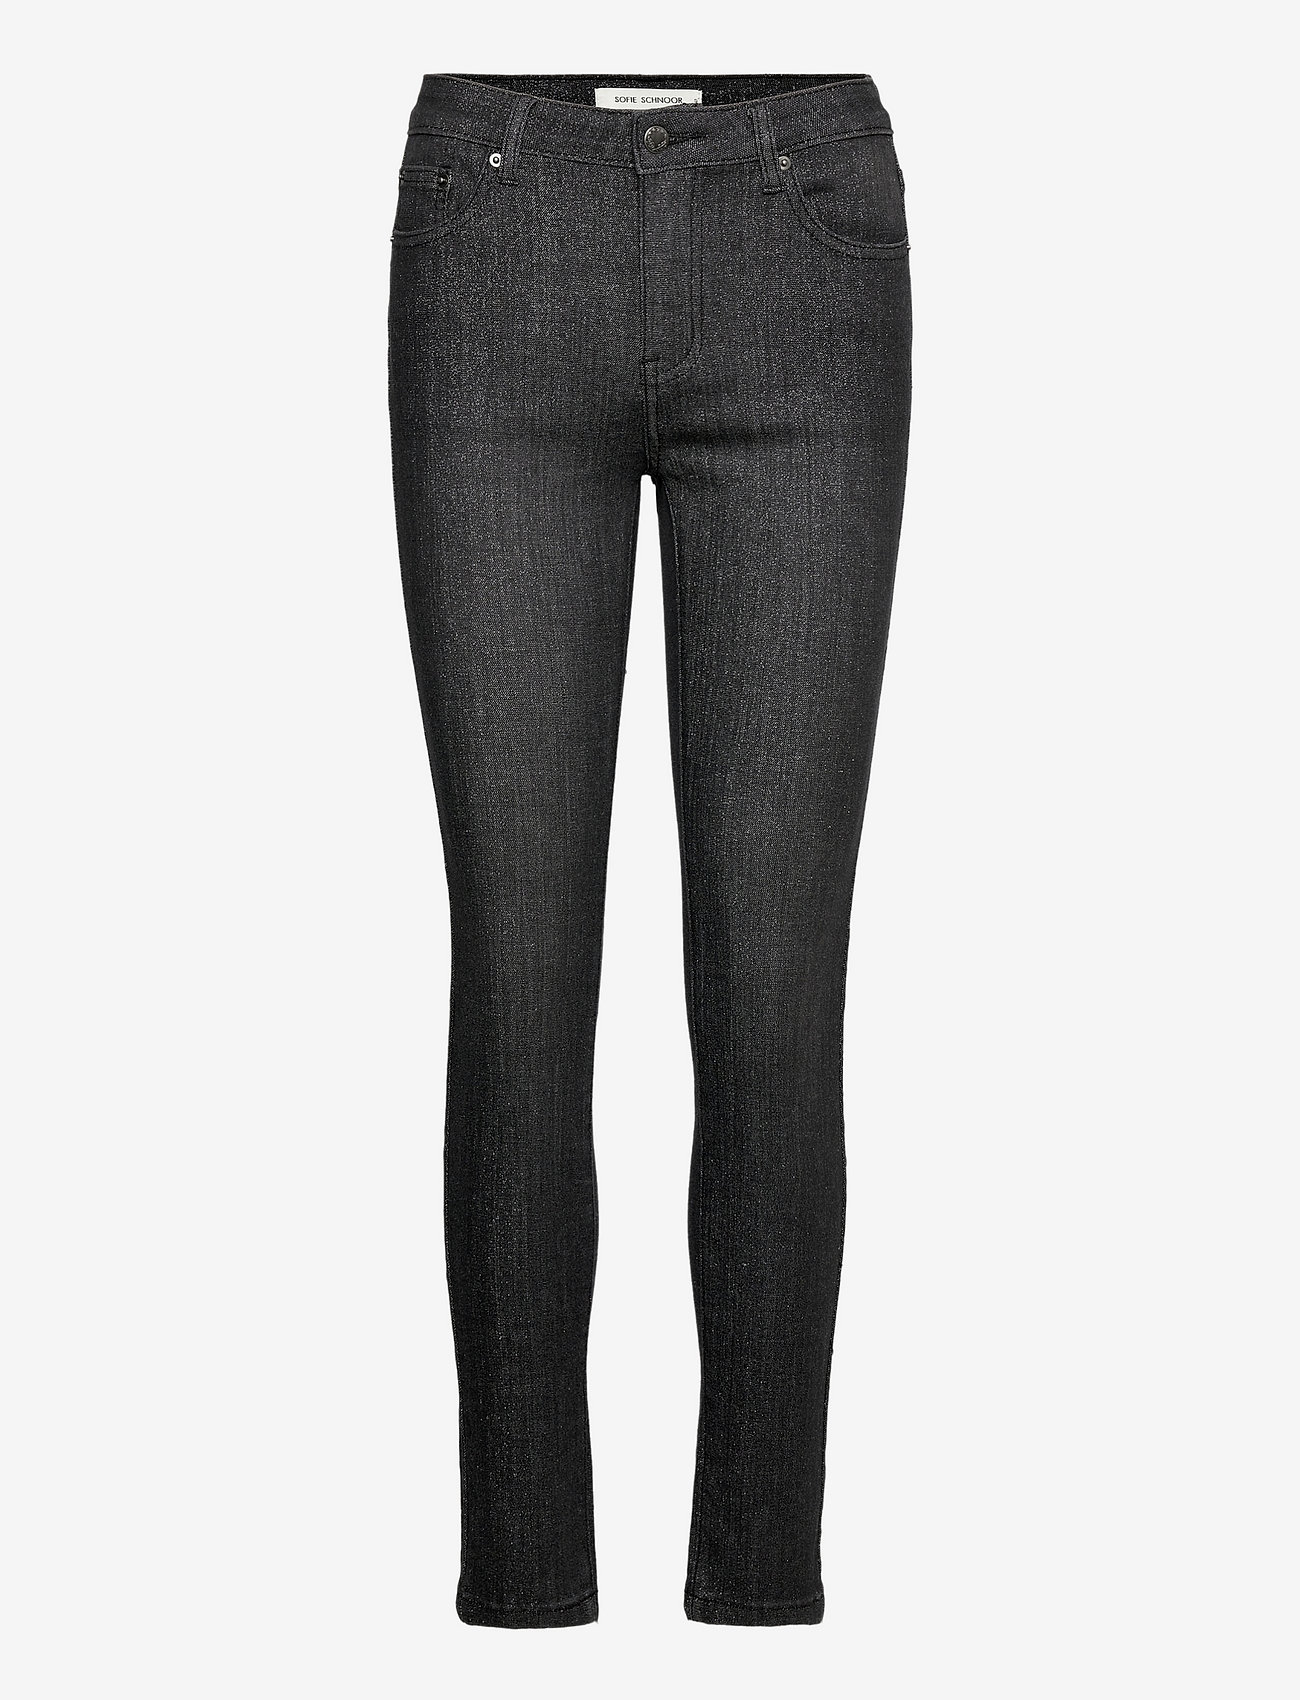 Sofie Schnoor - Jeans - dżinsy skinny fit - black - 0